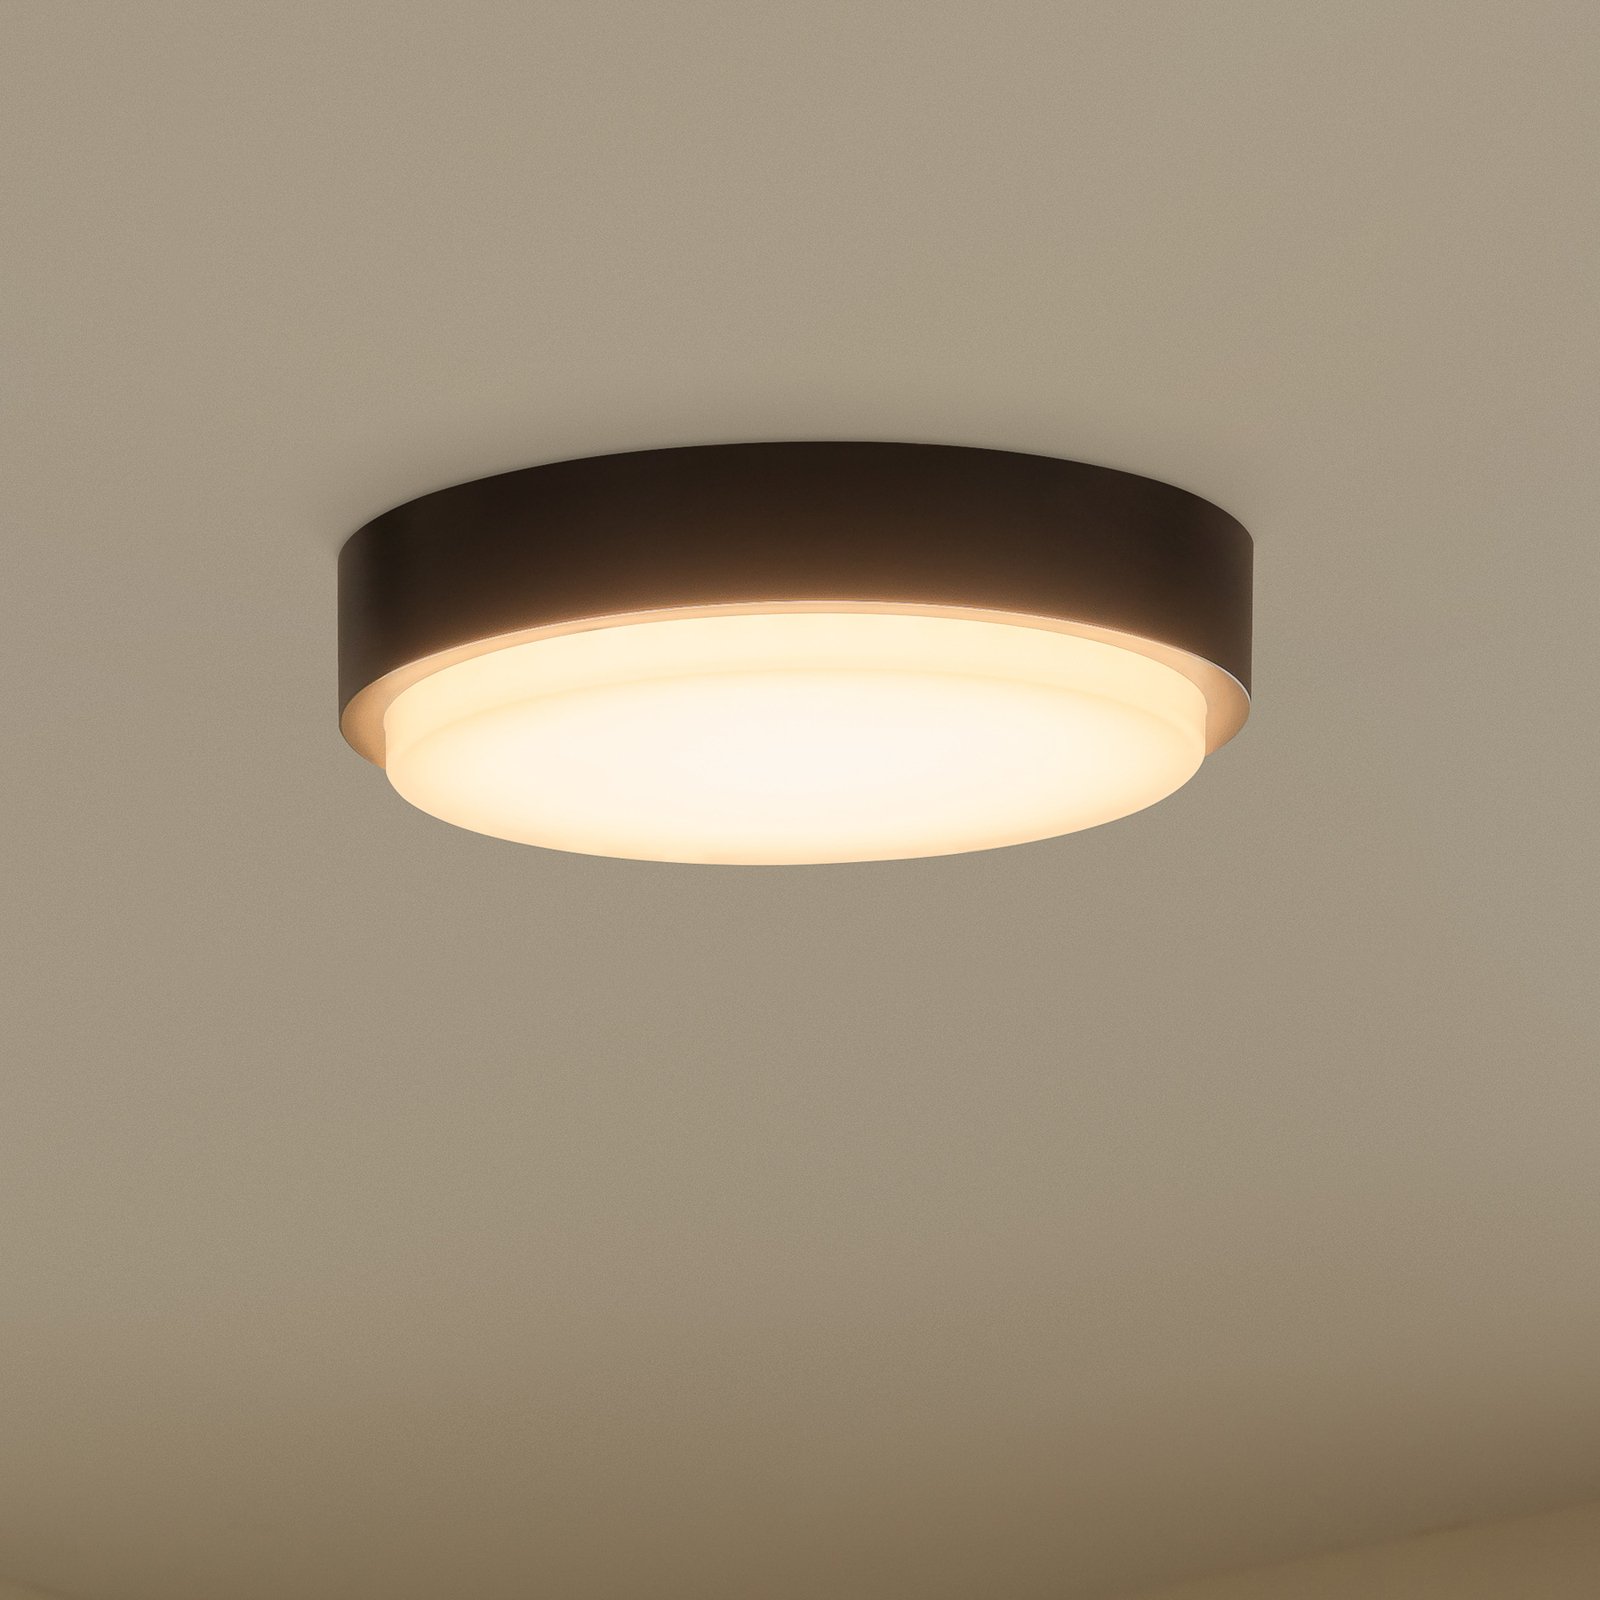 LED-utomhustaklampa Nermin, IP65, rund